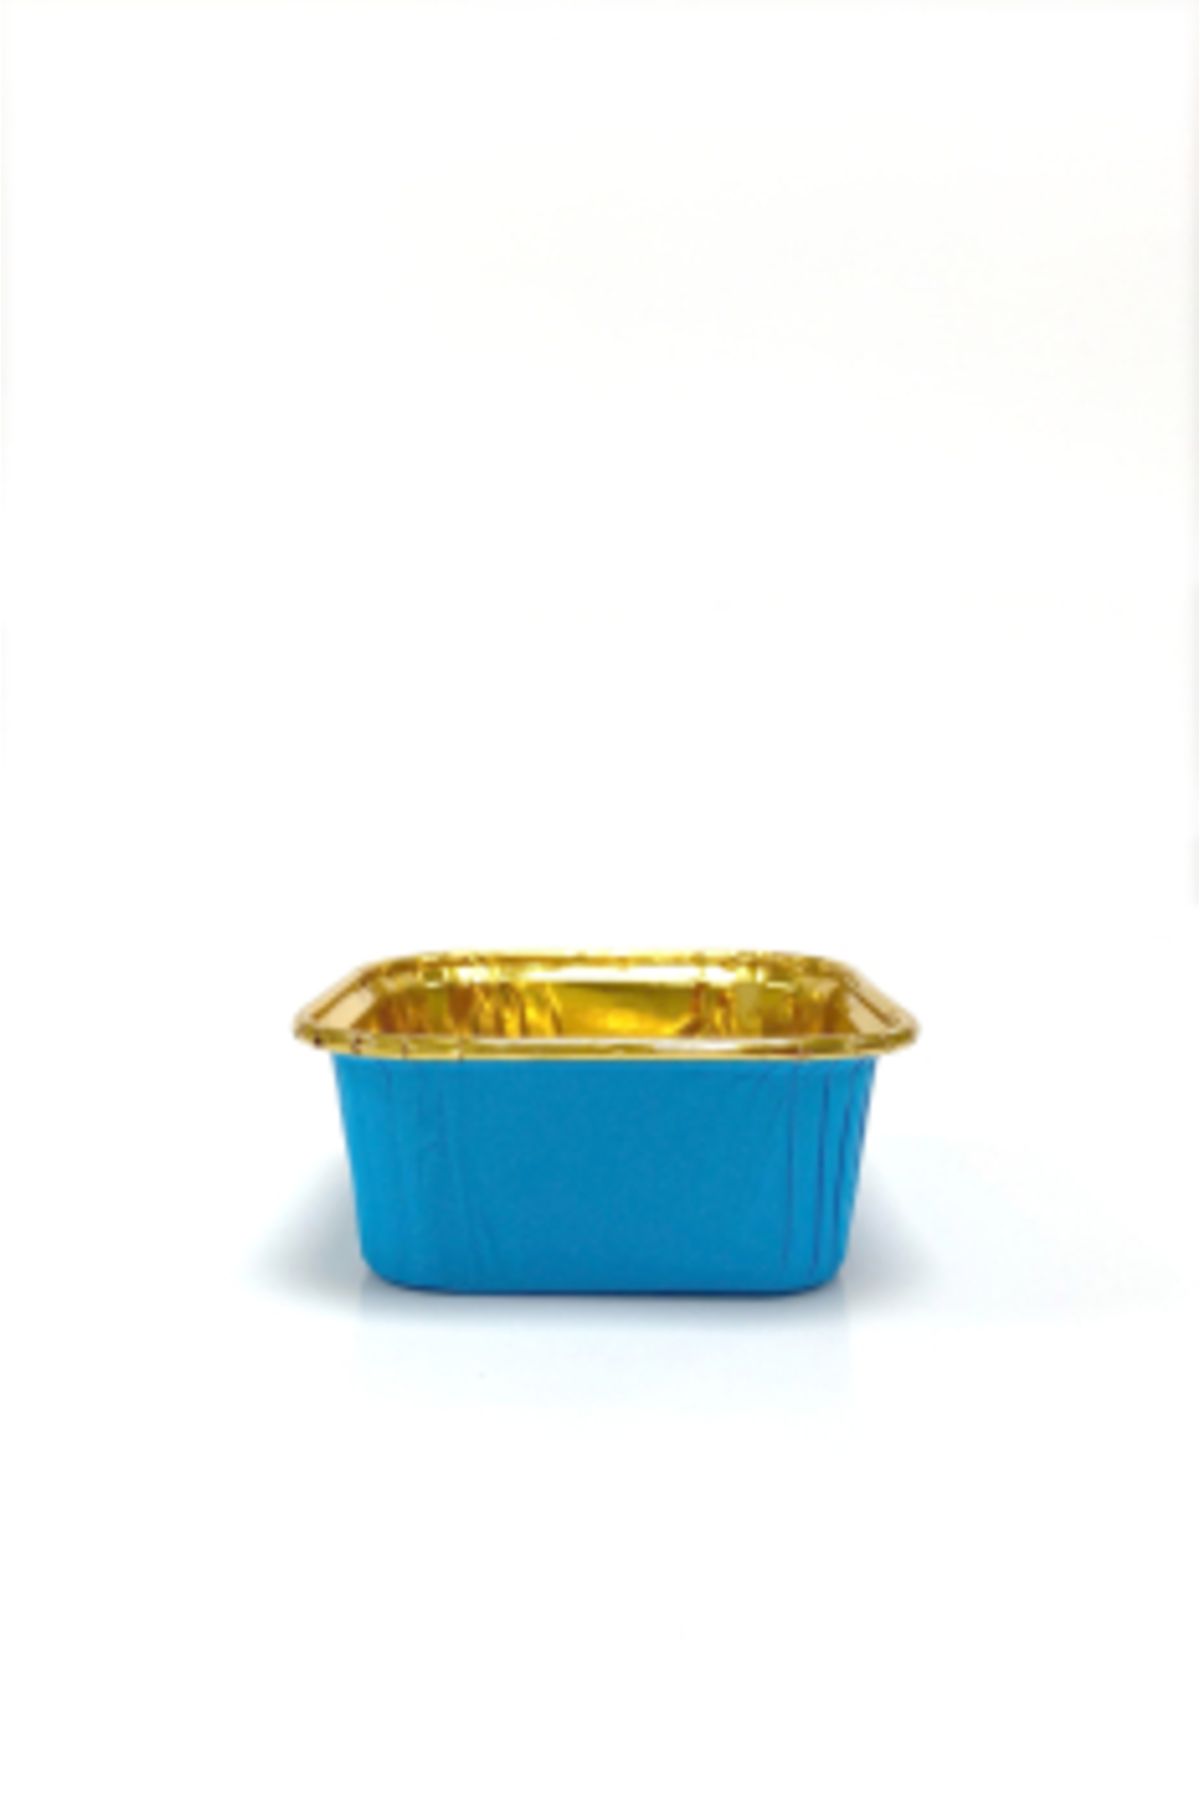 eğlencemarketi Dolphin Muffin Kek Kapsülü Kare Mavi İçi Gold 25 Adet